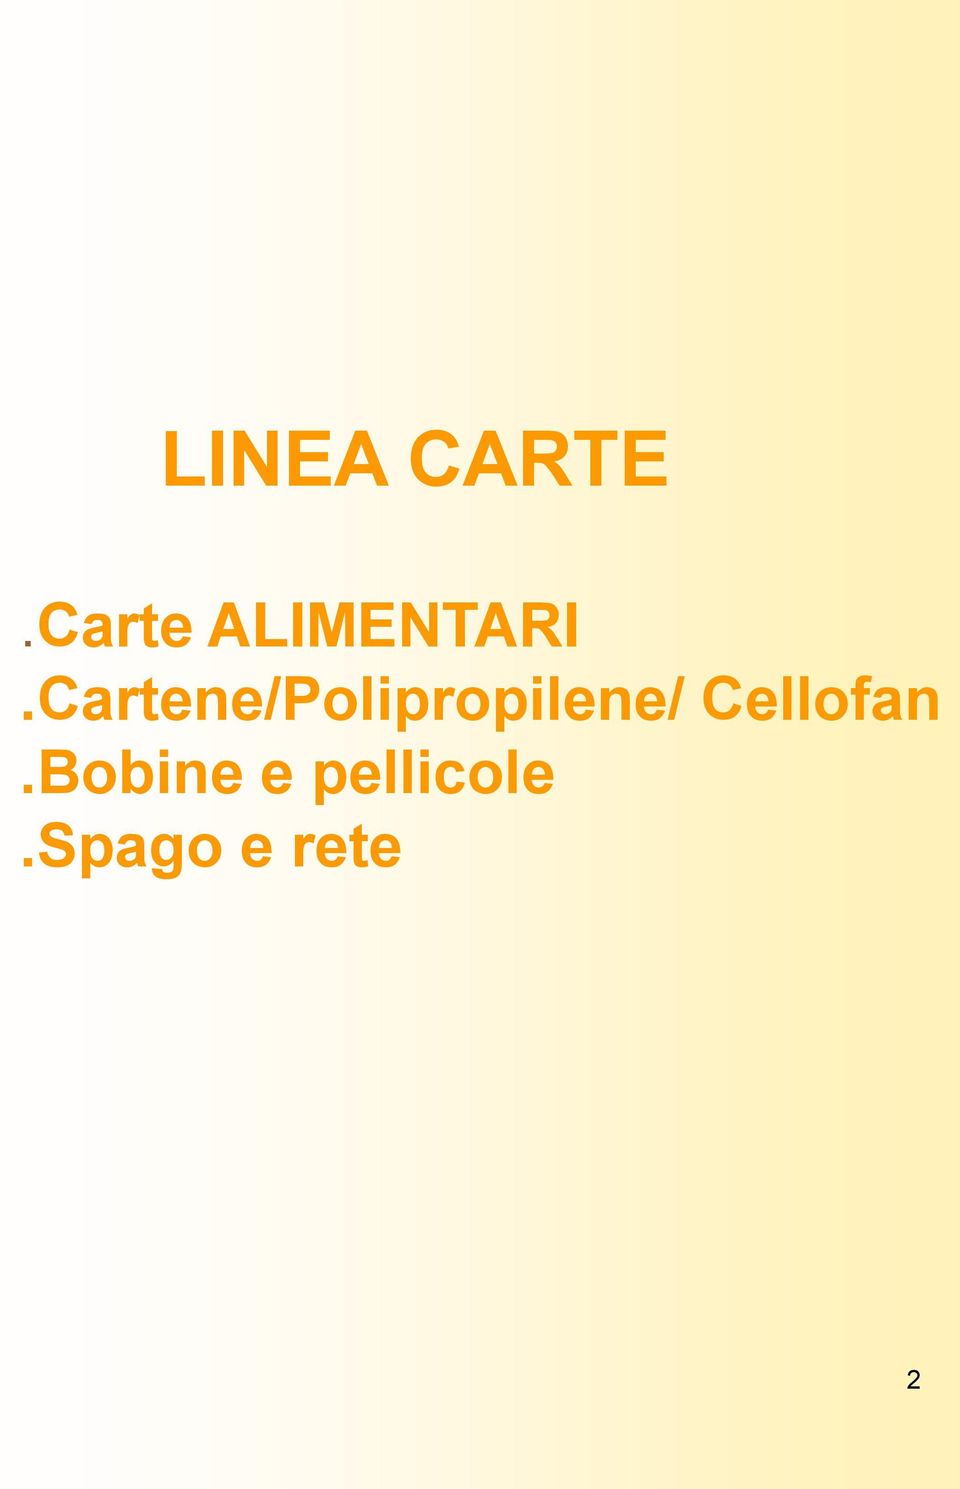 Cartene/Polipropilene/